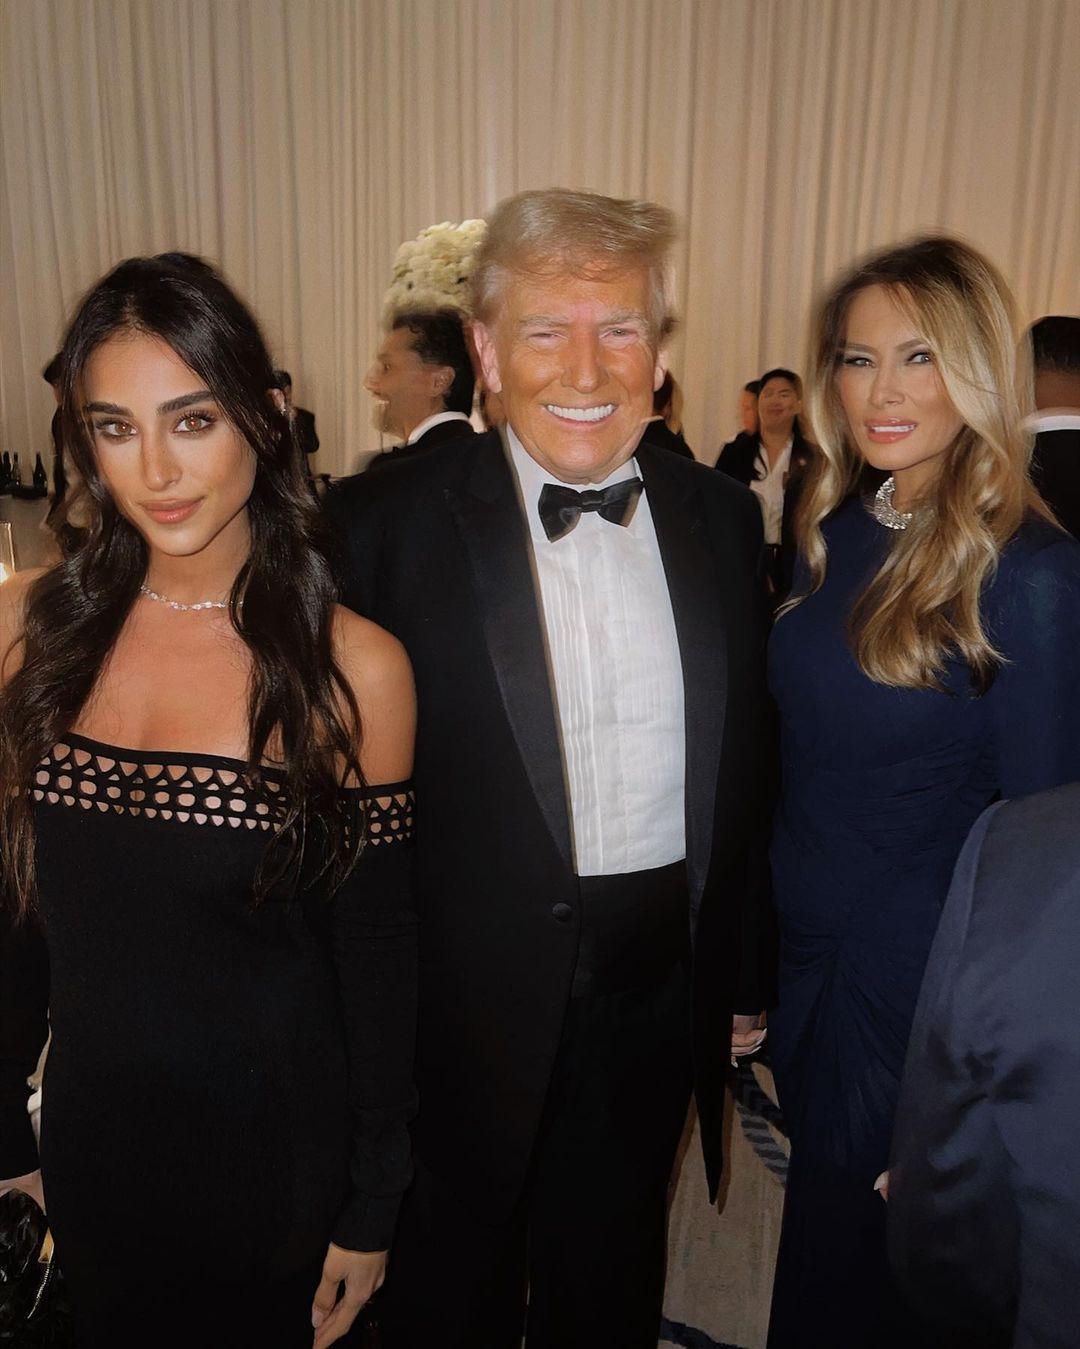 Melania Trump corajosamente retorna ao público em um vestido justo ao lado de Donald